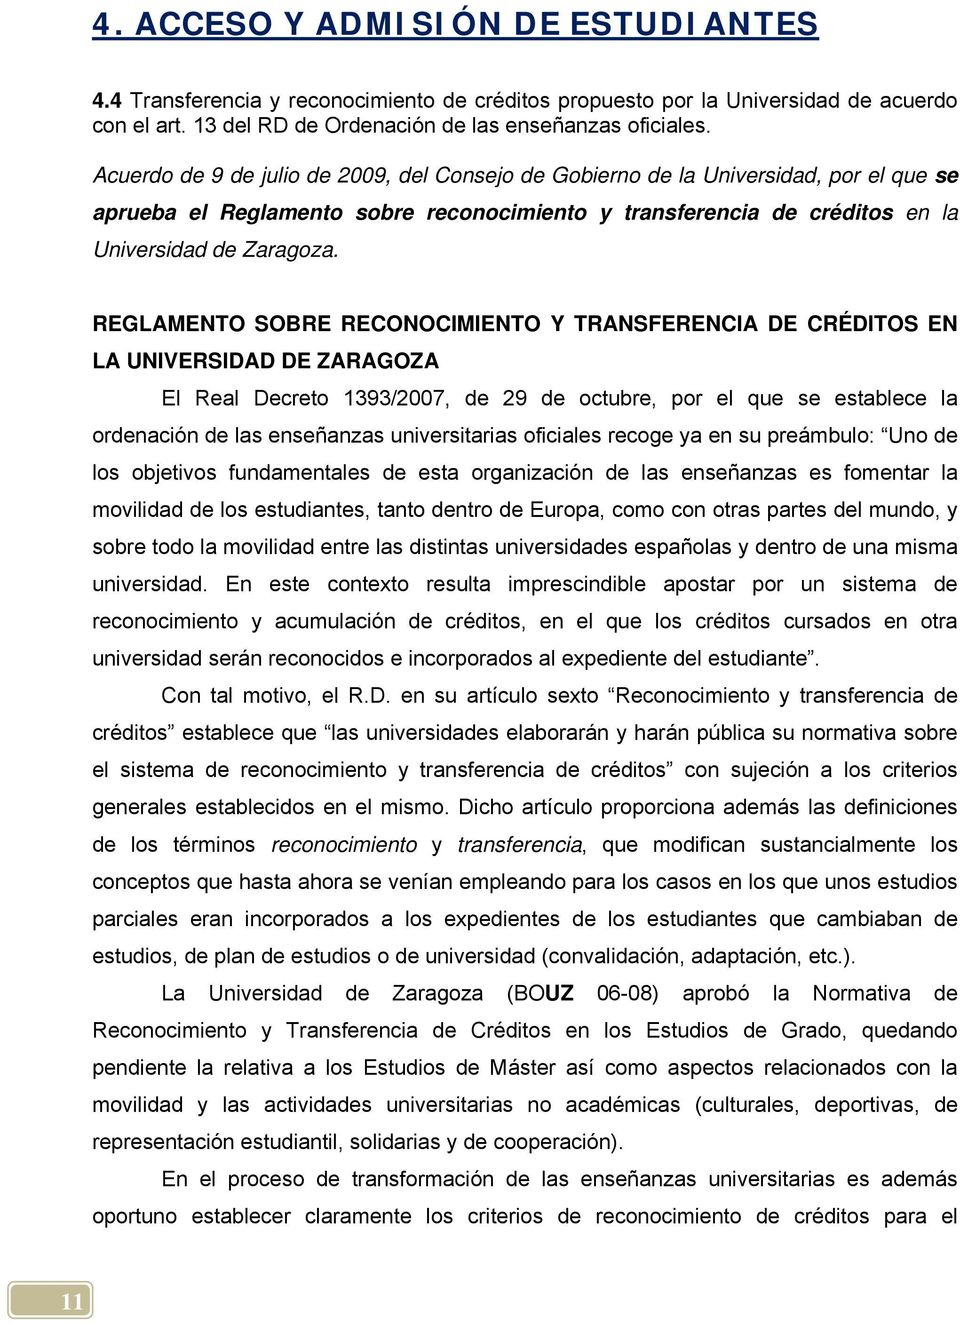 REGLAMENTO SOBRE RECONOCIMIENTO Y TRANSFERENCIA DE CRÉDITOS EN LA UNIVERSIDAD DE ZARAGOZA El Real Decreto 1393/2007, de 29 de octubre, por el que se establece la ordenación de las enseñanzas